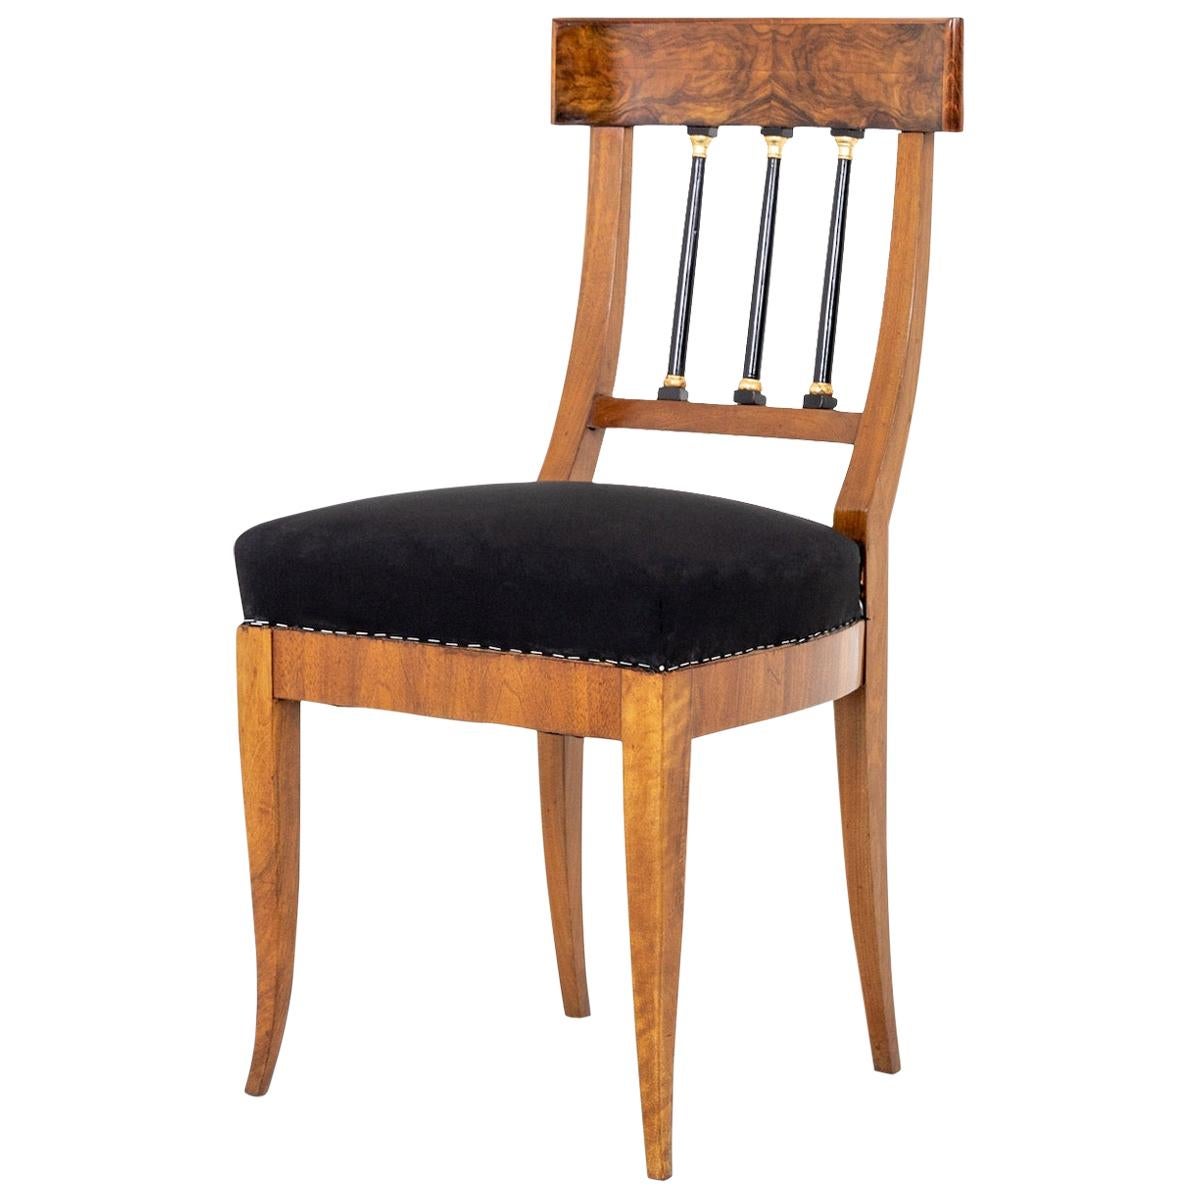 Biedermeier Chair, around 1820